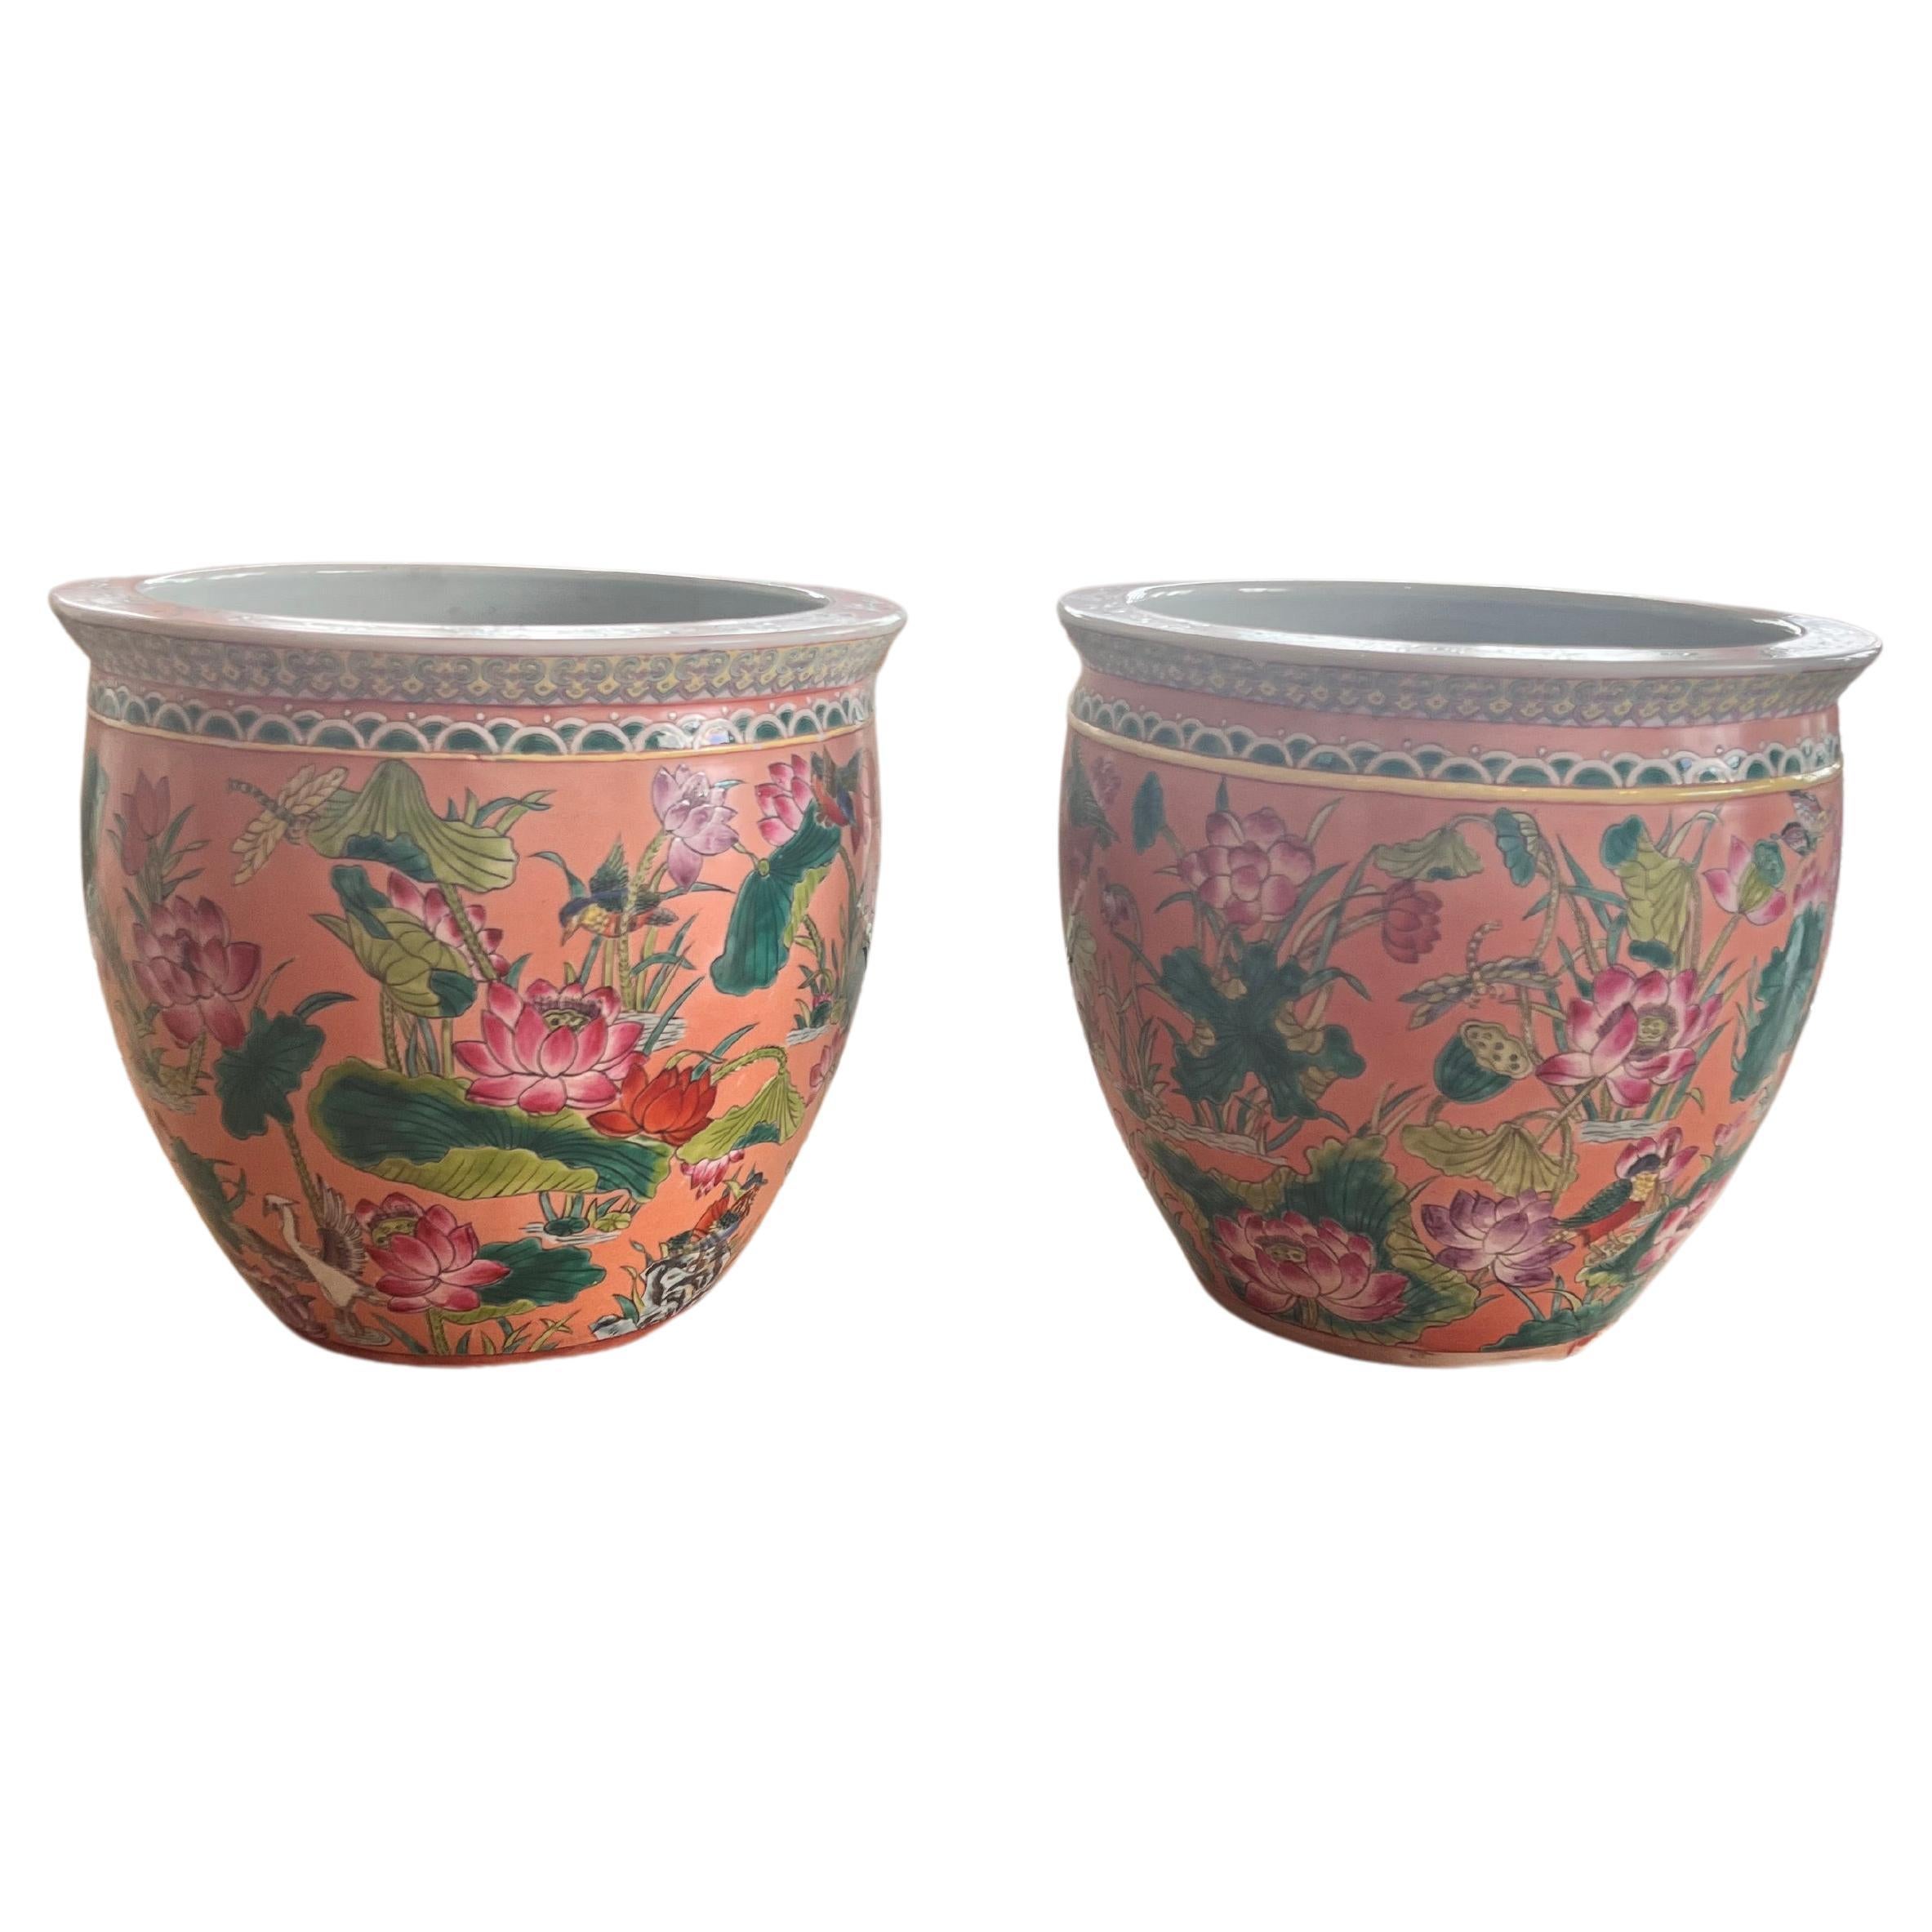 Chinesische Keramikvasen
Schöne Stücke für  Ausstattung des Wohnzimmers oder des Hauptempfangsbereichs.
Schöne Koralle und grünes Design und Blumen und Fische. 
Größe 40x36 cm / 15,74 x 14,17 Zoll. 

PRADERA ist ein in zweiter Generation